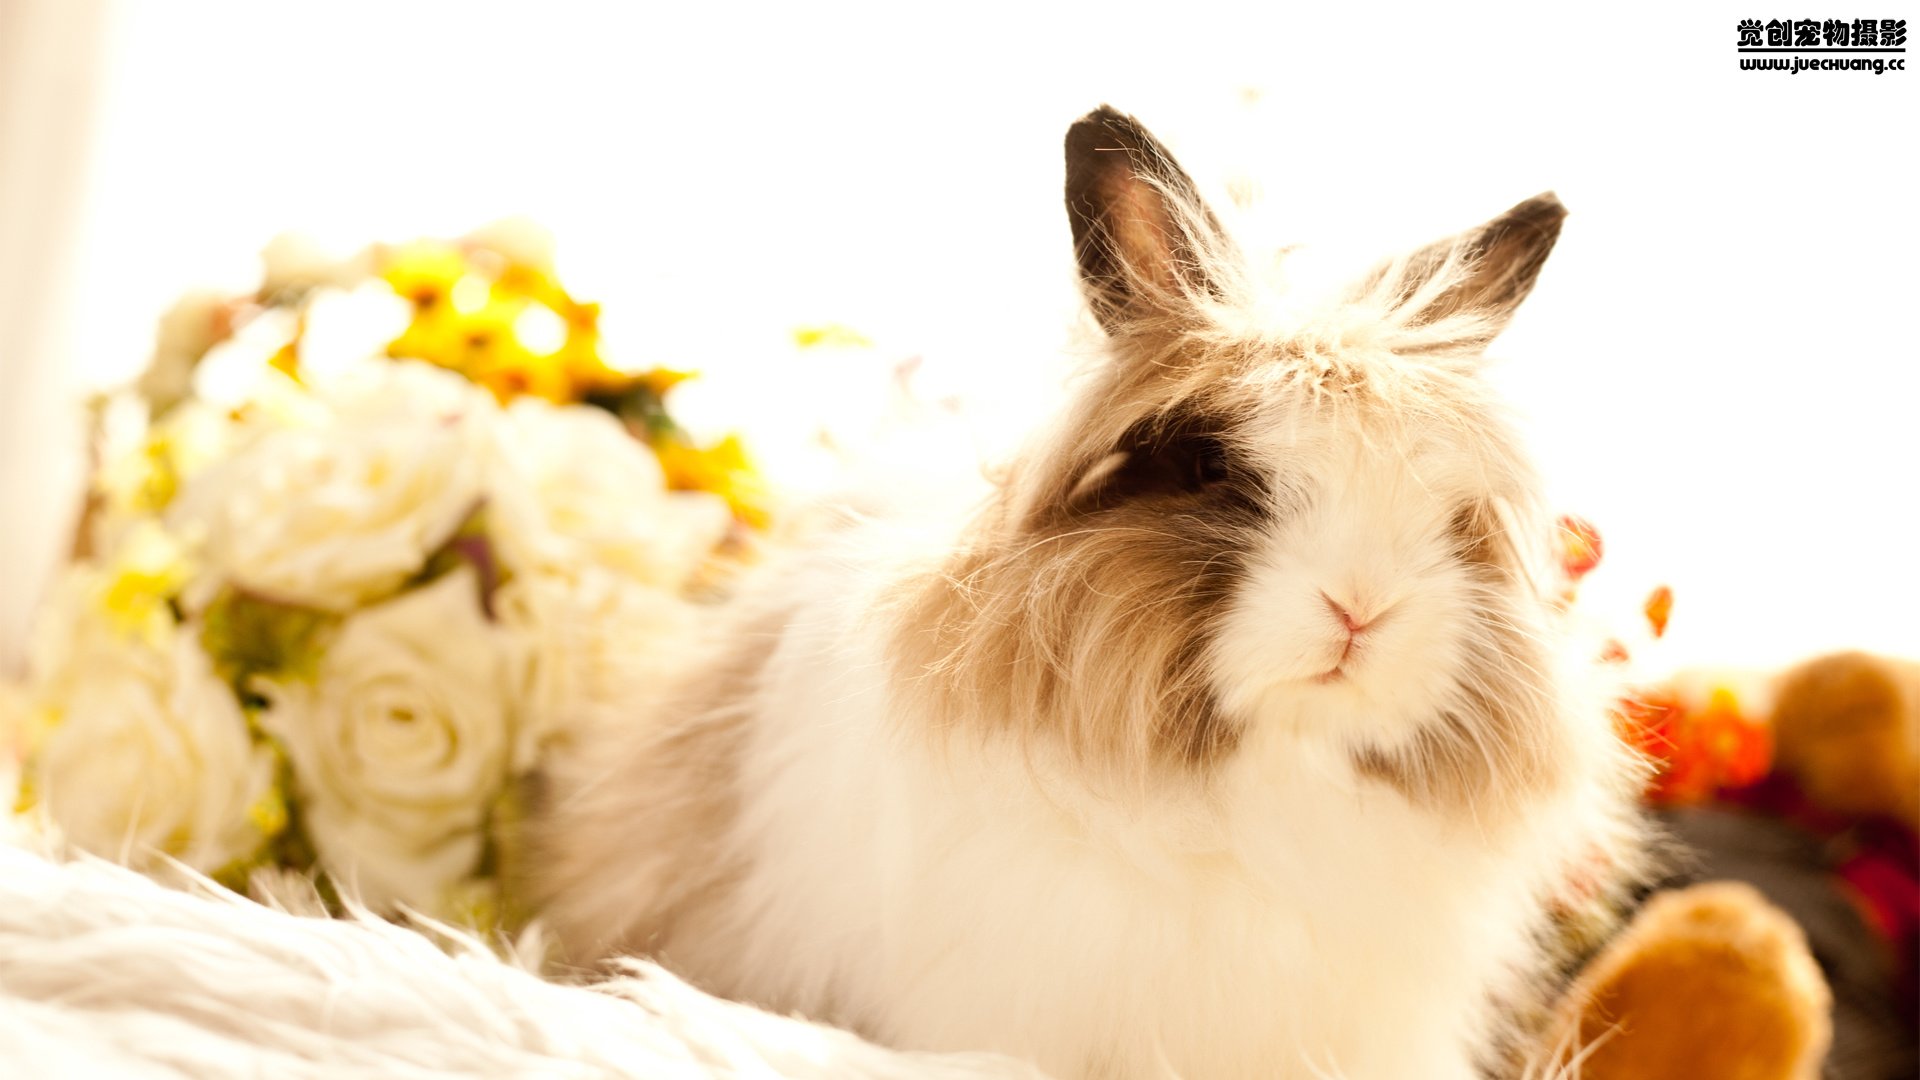 宠 觉创摄影 野生动物 兔子 可爱 卖萌图 觉创摄影高清手机壁纸免费